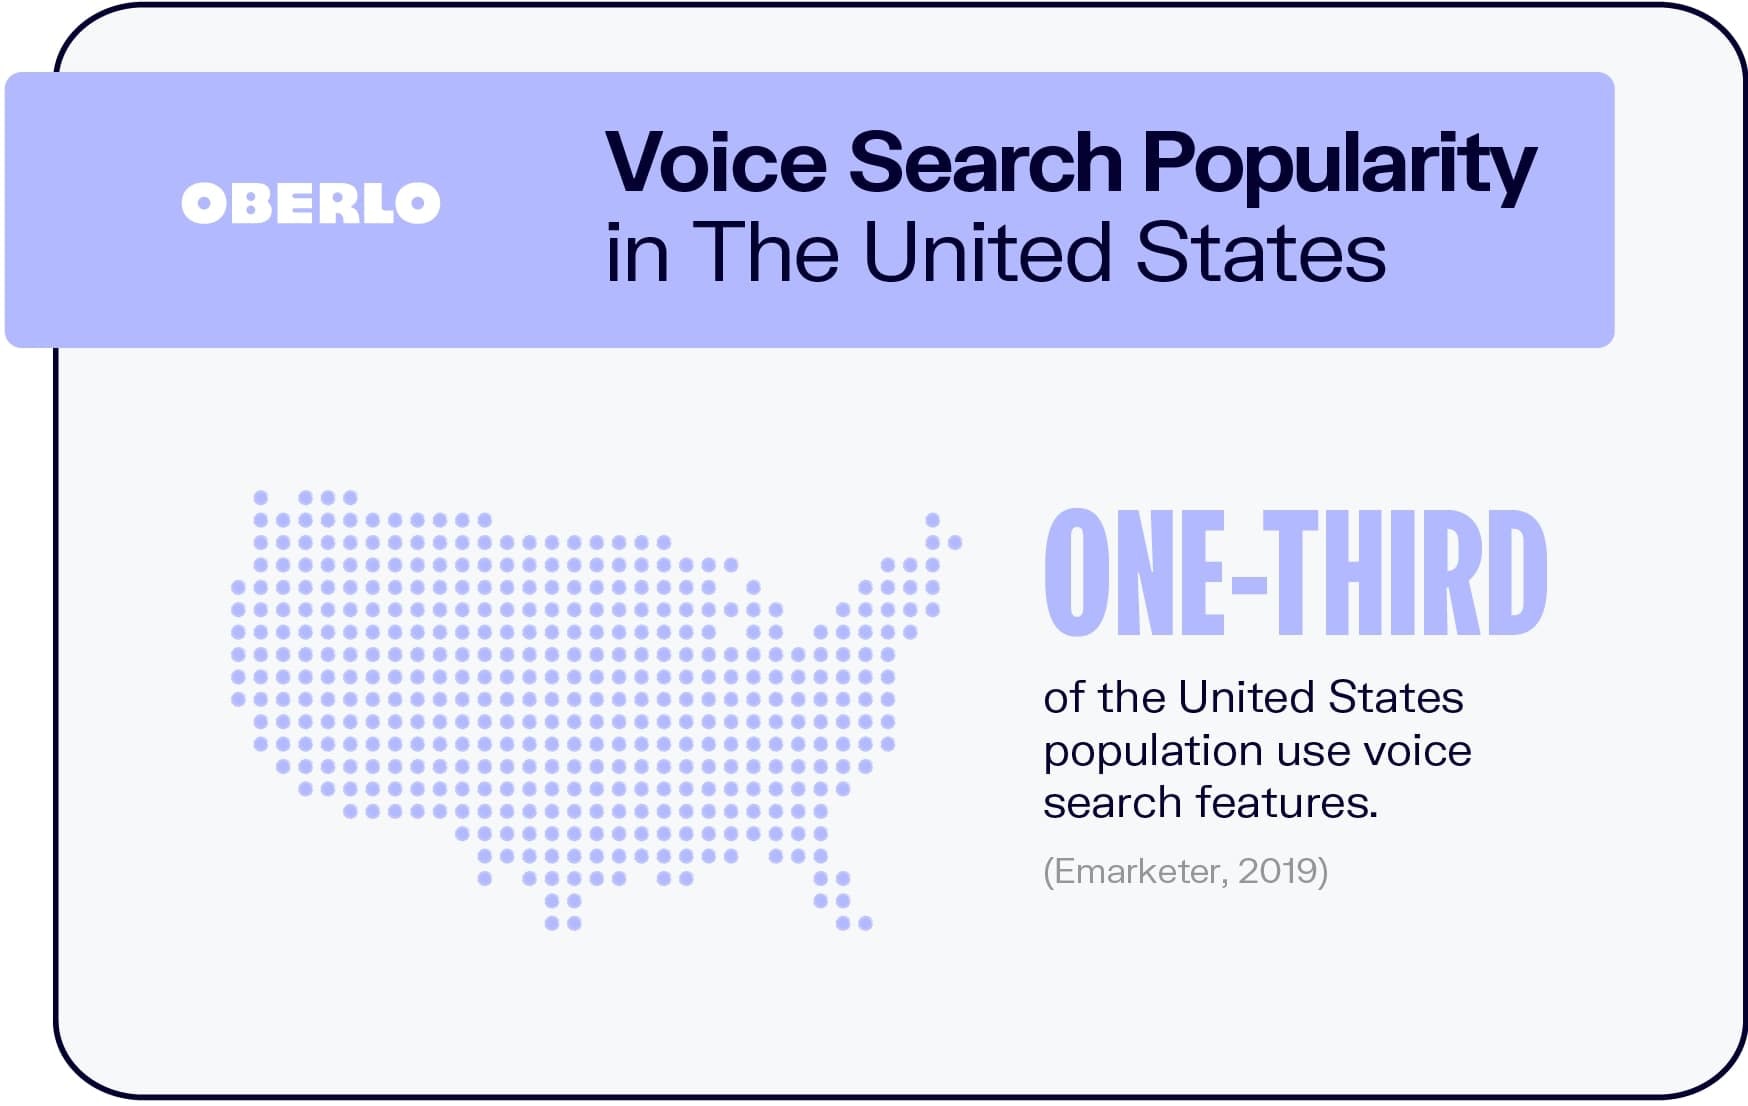 语音搜索在美国的流行程度